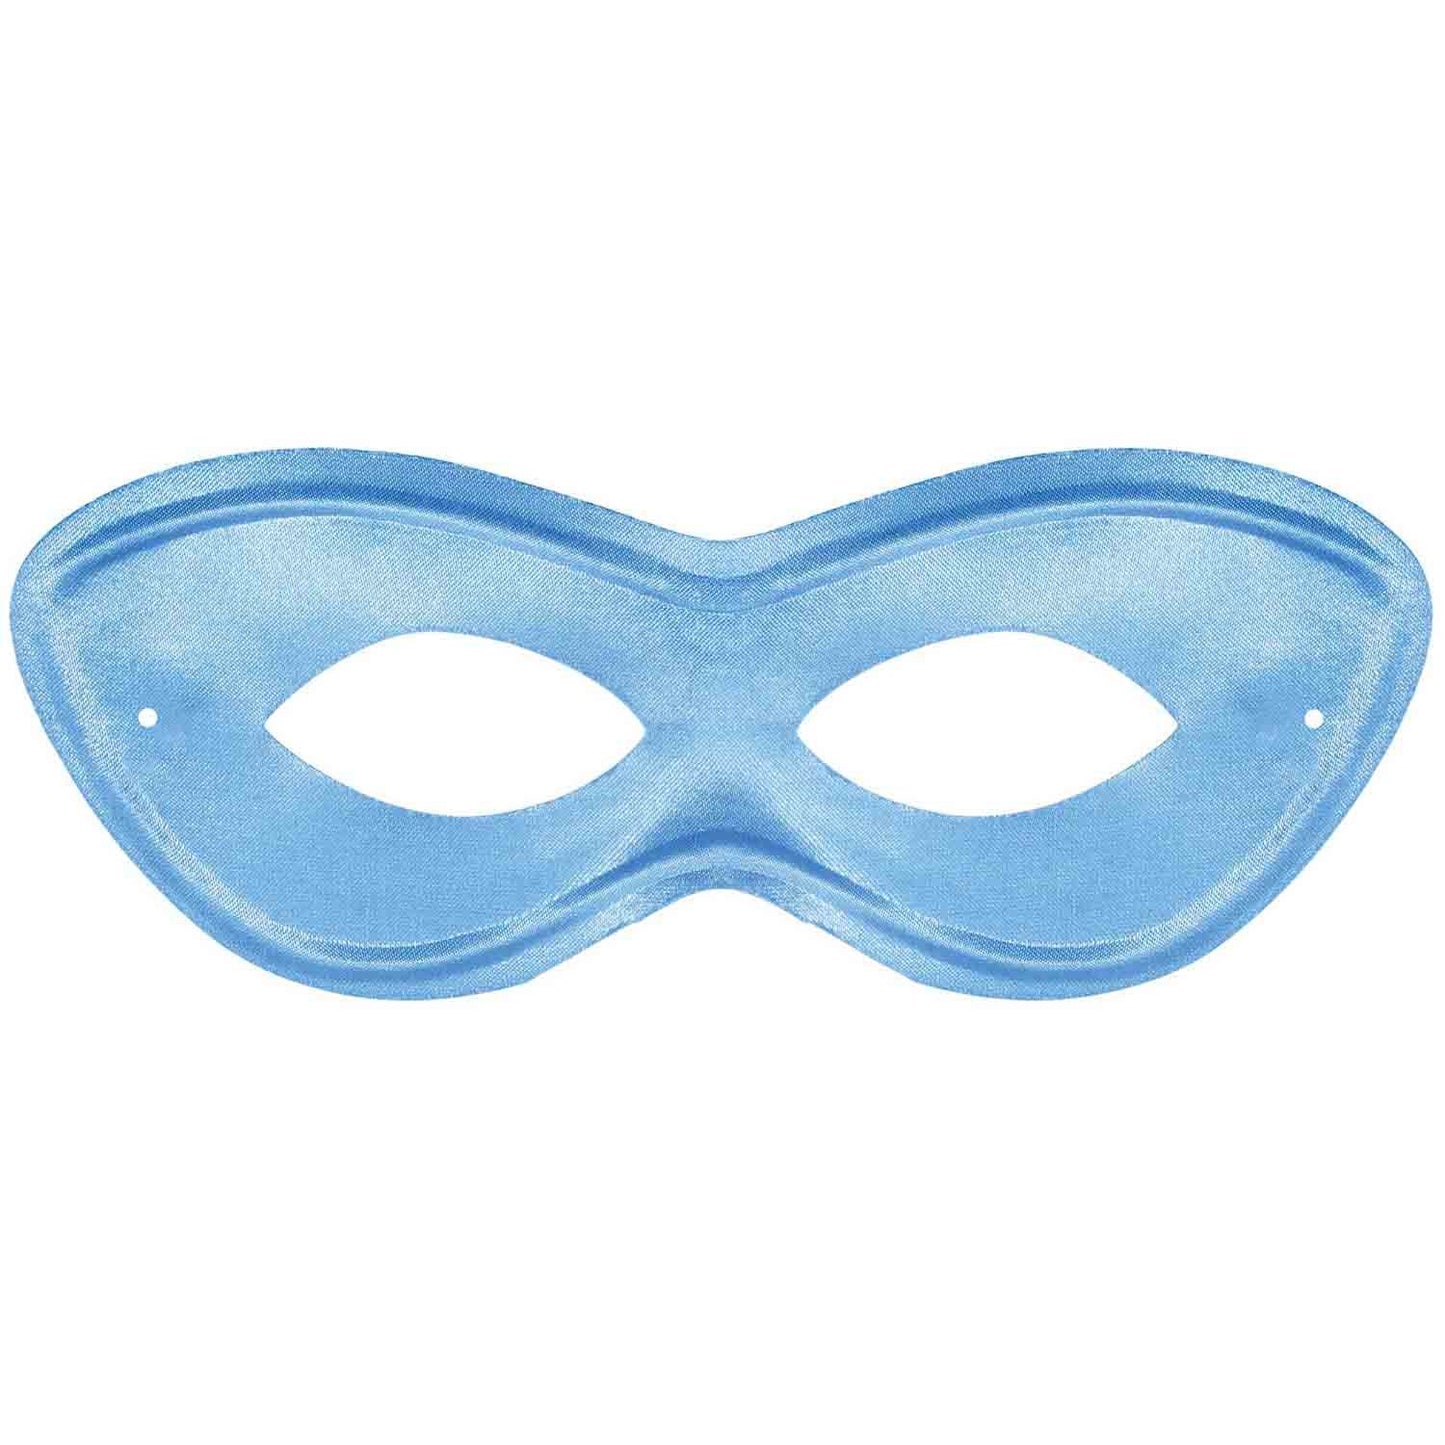 Super Hero Eye Mask - Light Blue